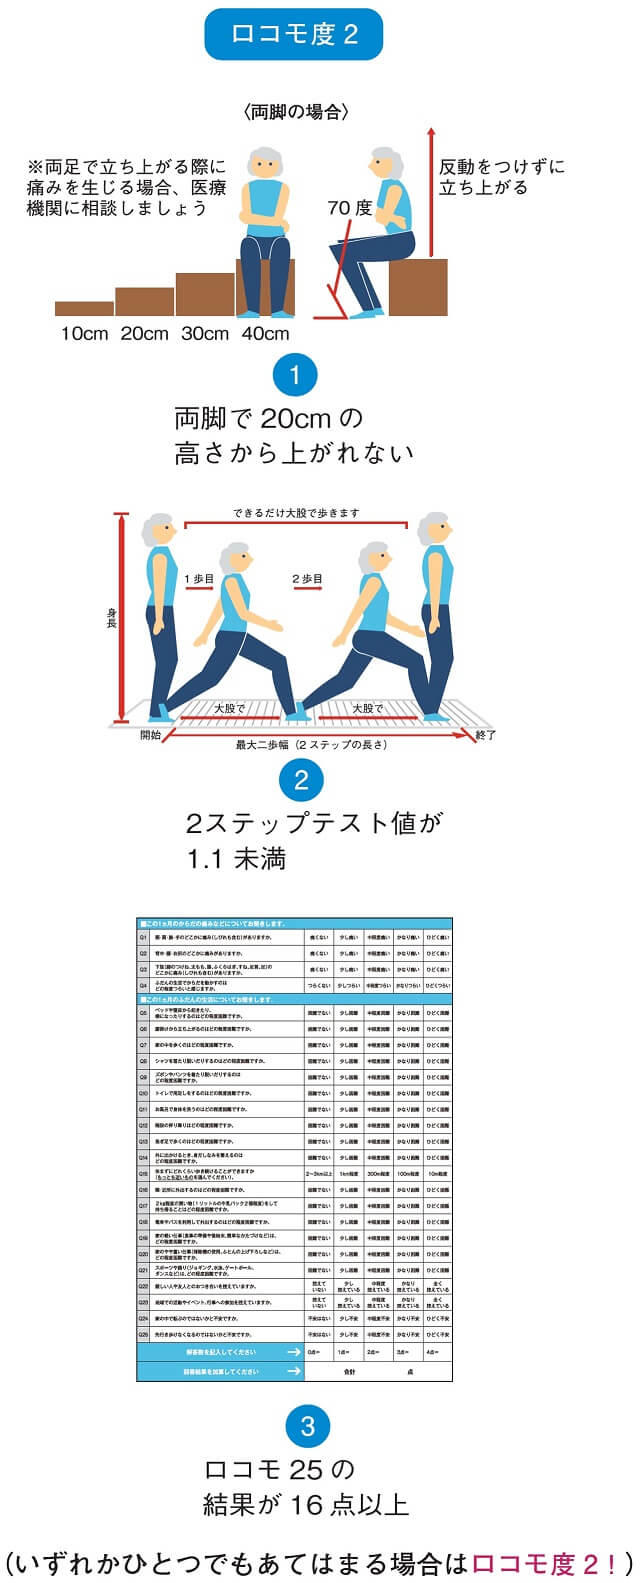 図3-1：両脚での立ち上がりテスト、2ステップテスト値、ロコモ25の点数によりロコモ度2の判定方法を示す図。